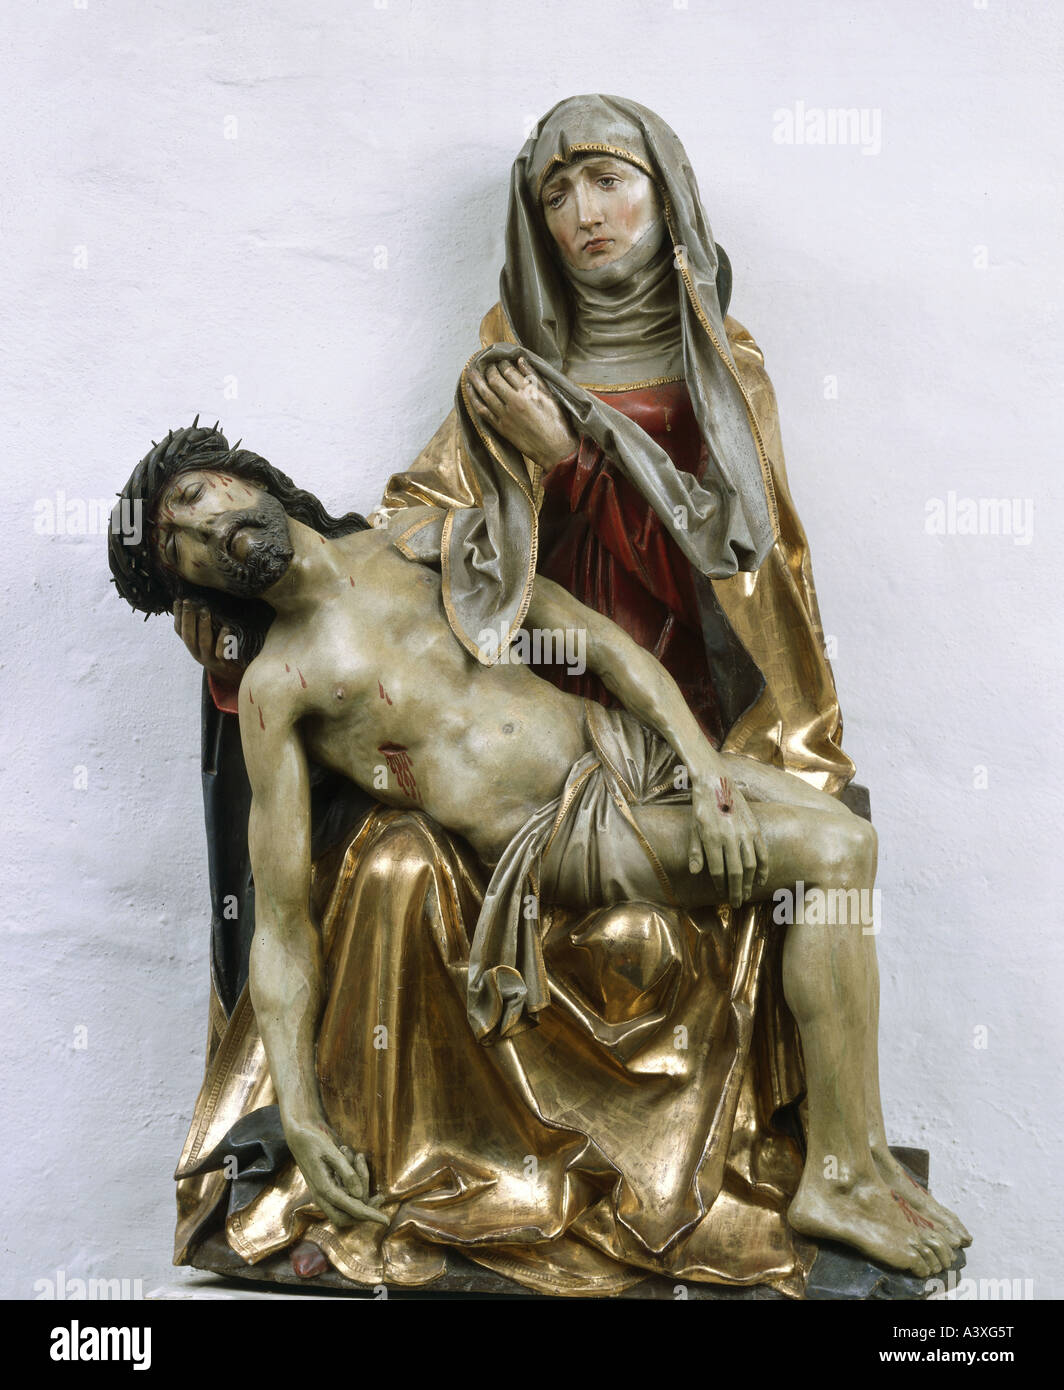 Bildende Kunst, Riemenschneider, Tilman (ca. 1460-1531), Pieta, Skulptur, Holz, ca. 1515, Franziskanerkirche, Würzburg, Bayern Stockfoto